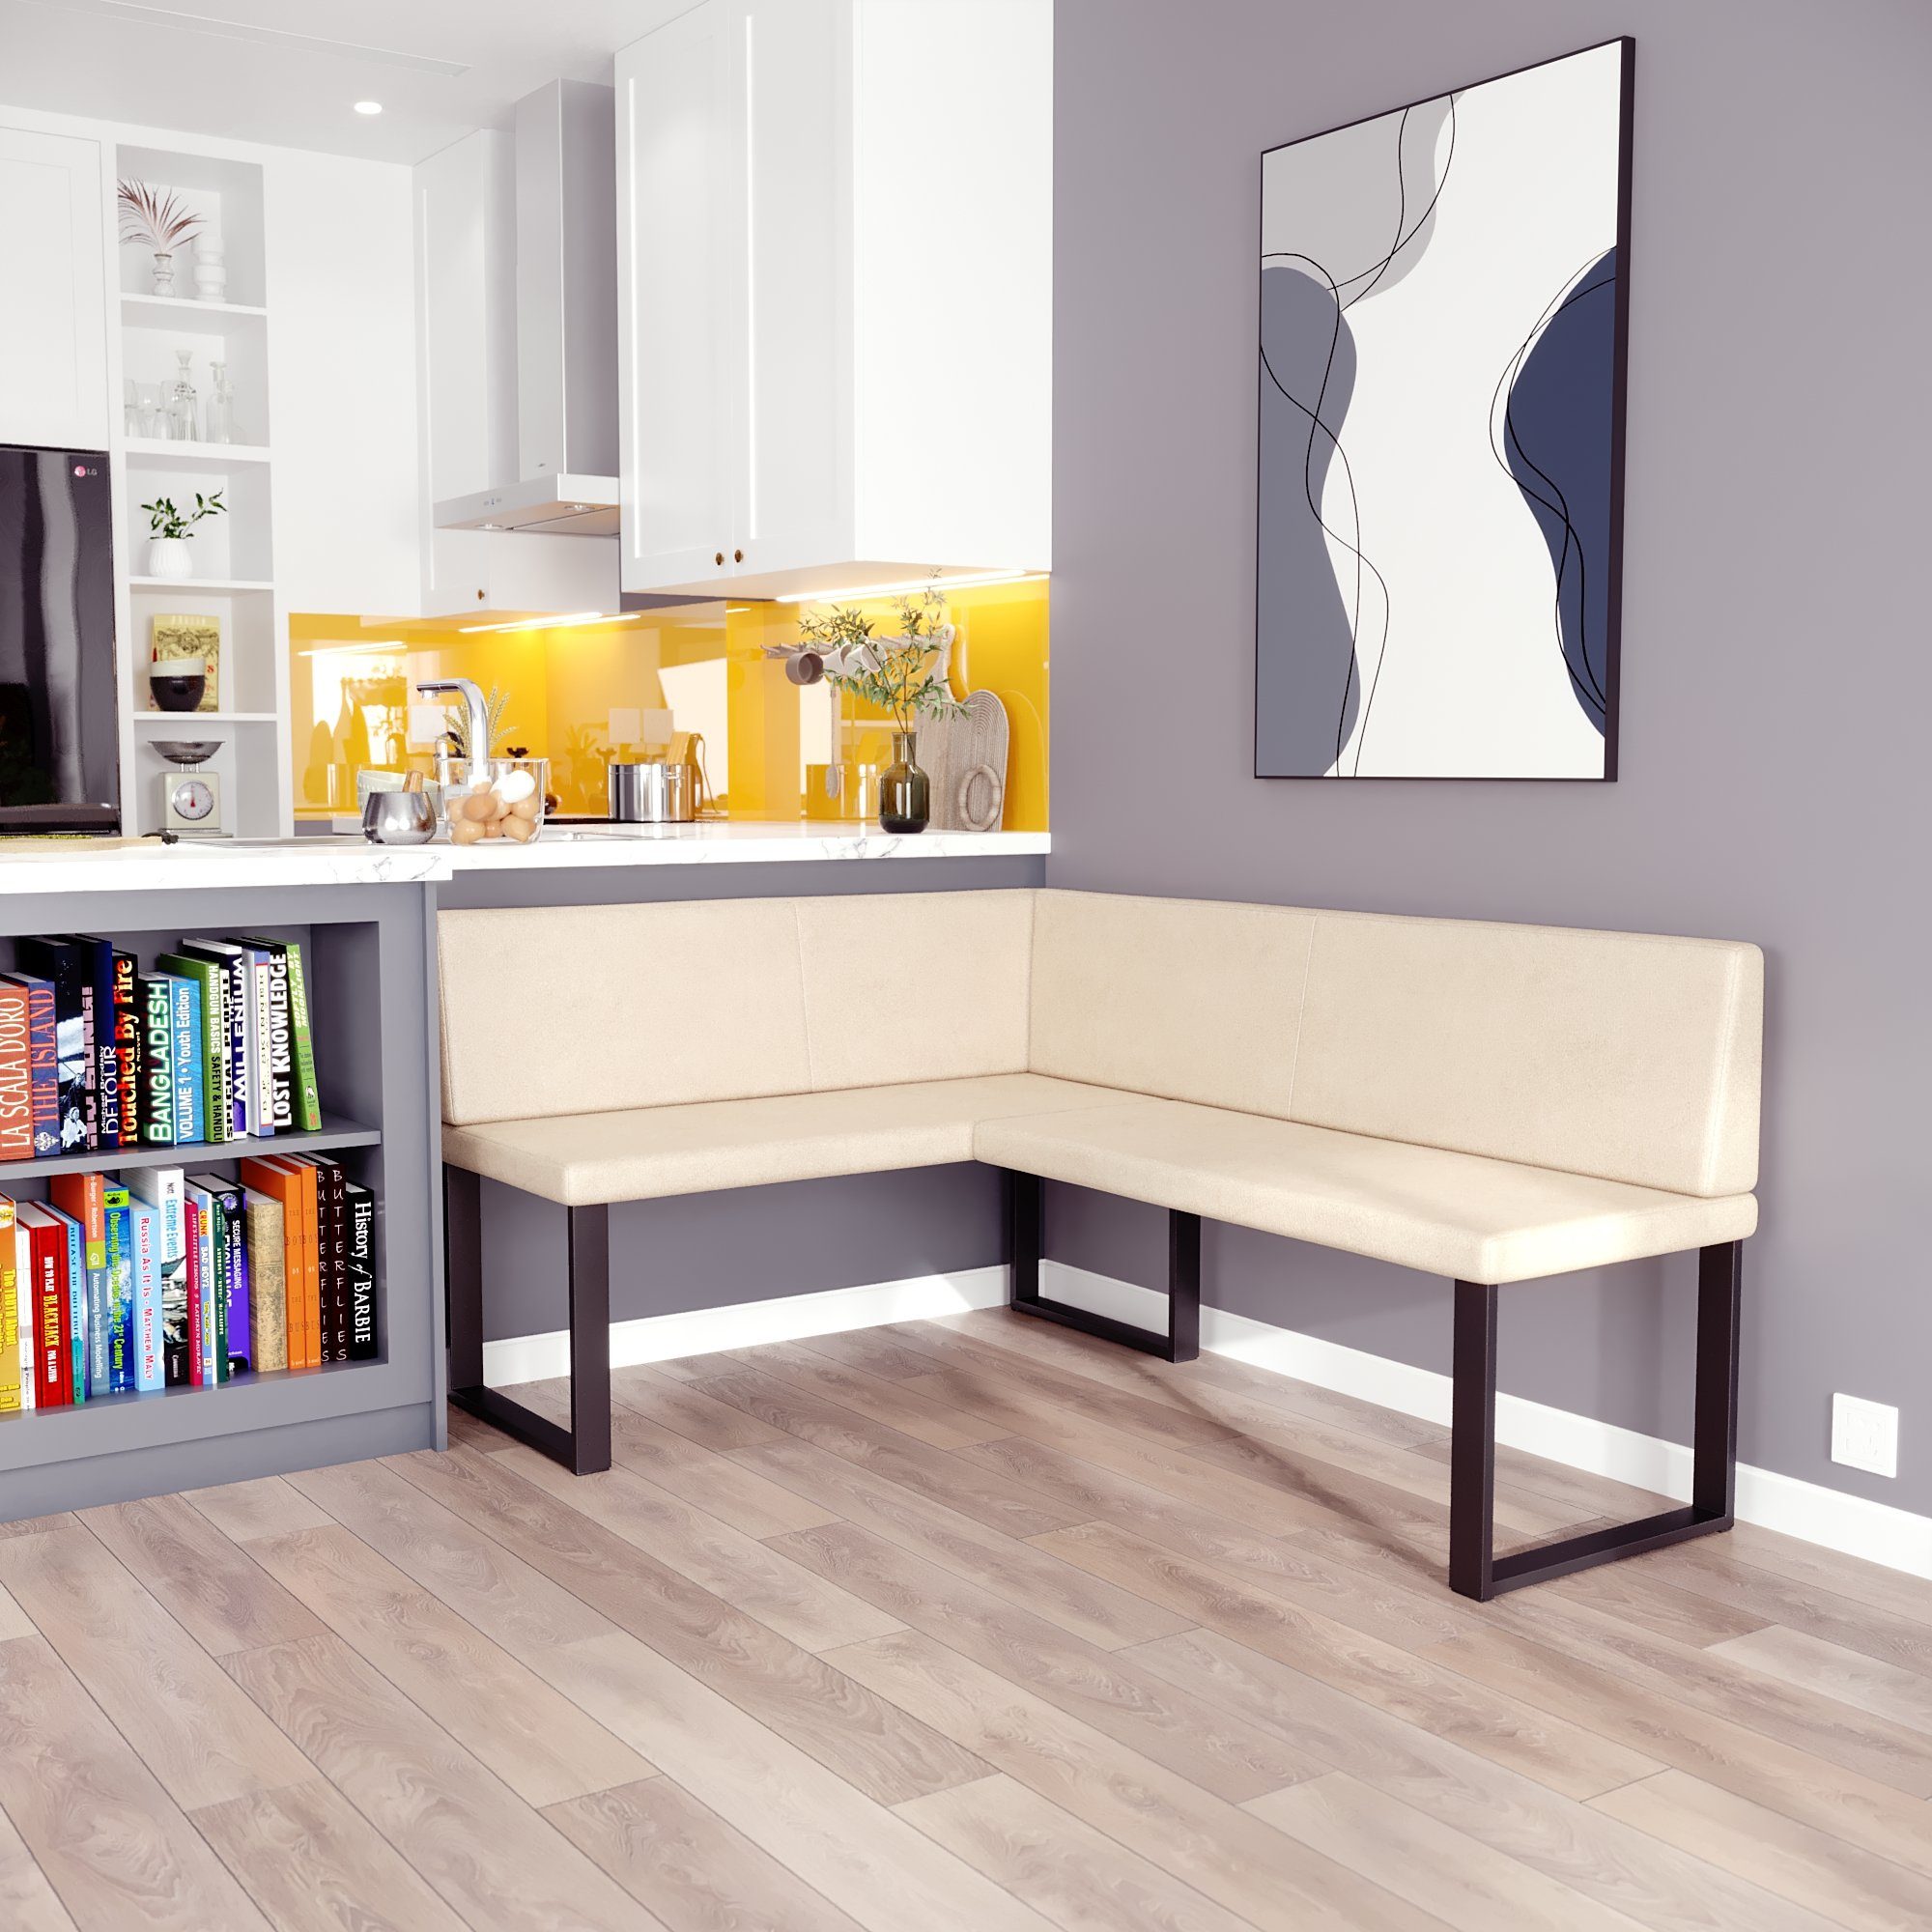 sofa4you Eckbank ALINA Metall, perfekt für Küche, Esszimmer, Wohnzimmer. Zwei Größen 128x168/142x196 beige